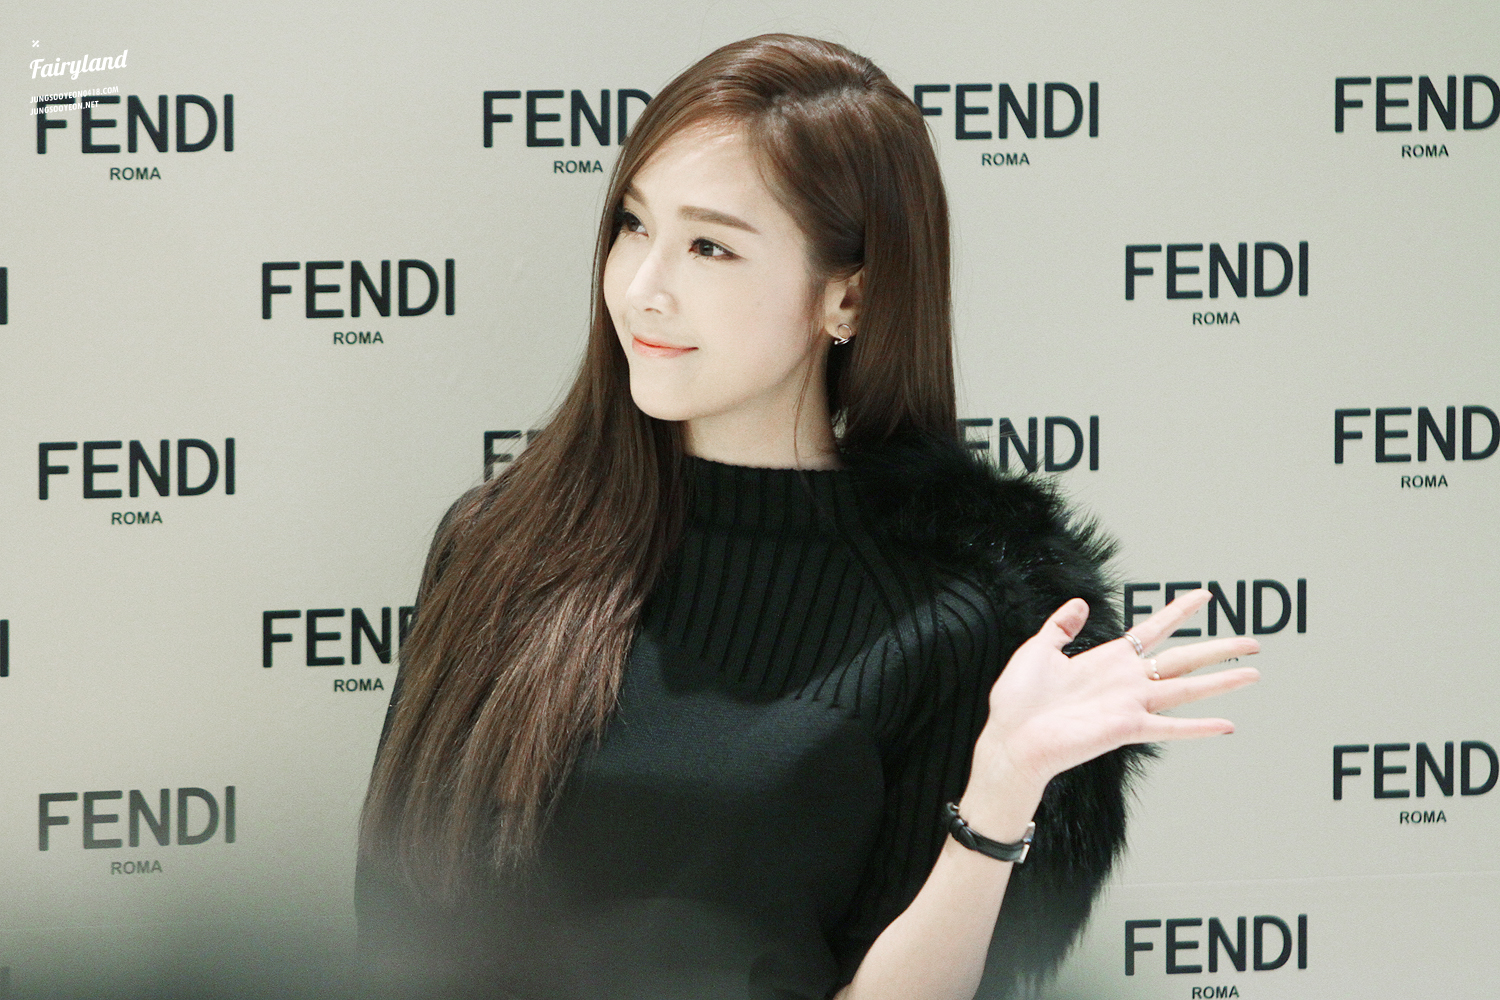 [PIC][24-11-2014]Jessica tham dự sự kiện khai trương cửa hàng "Fendi" tại Lotte World - Seoul vào chiều nay 231984425474718D31B583